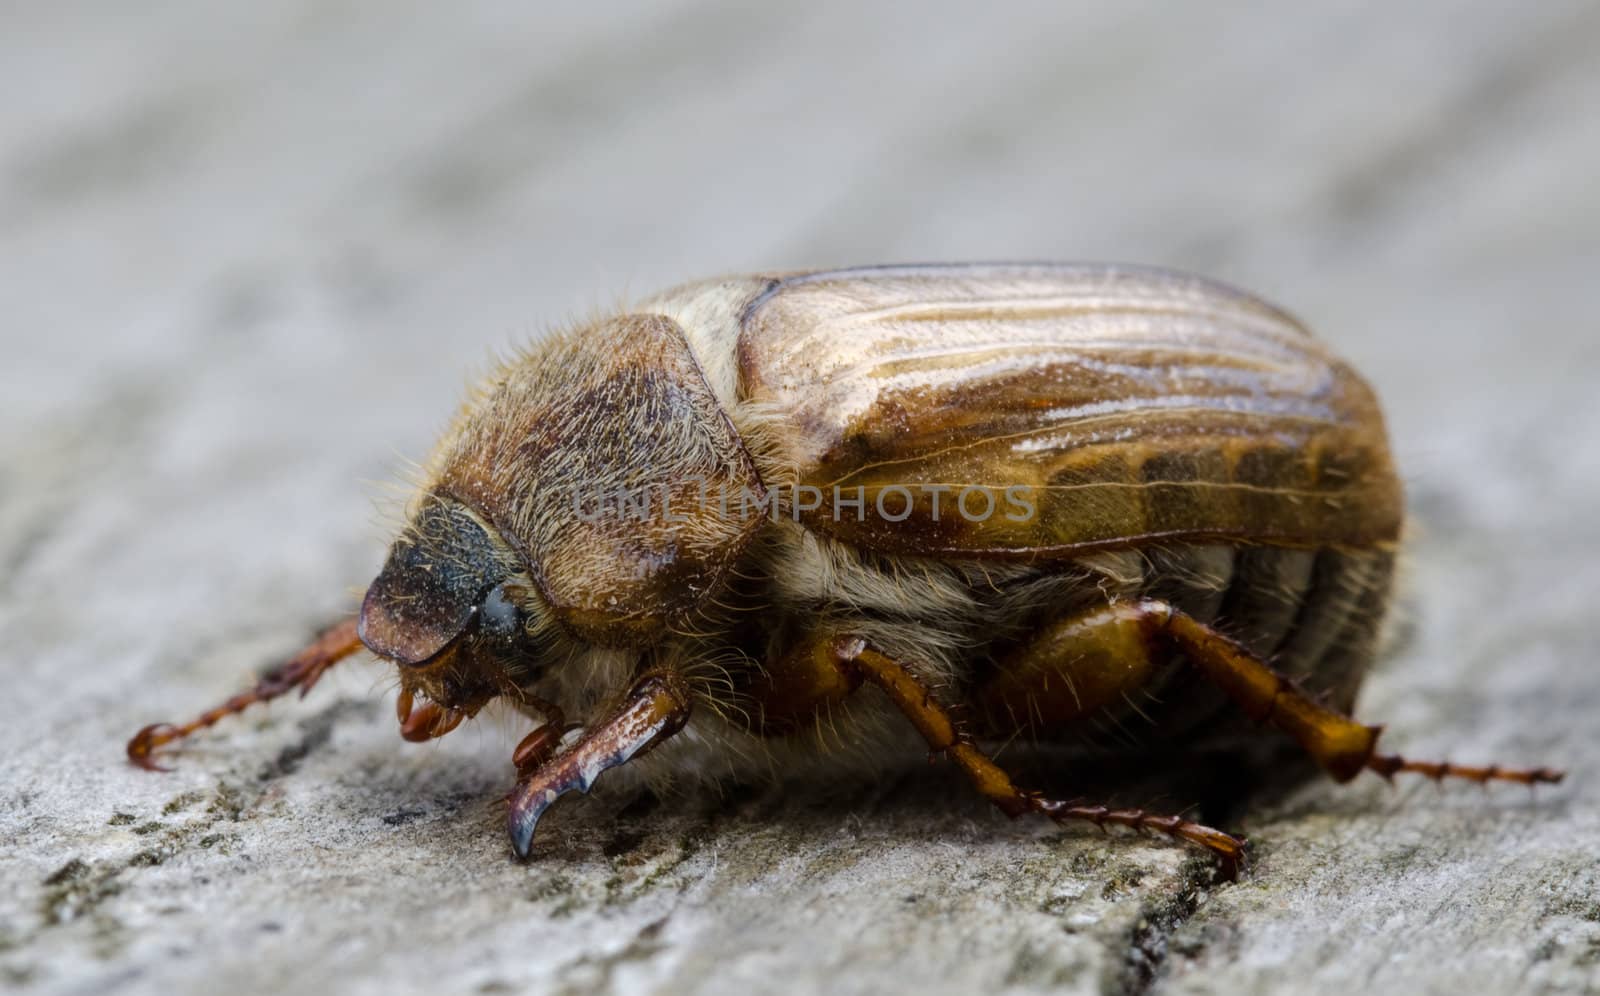 European june beetle by Arrxxx